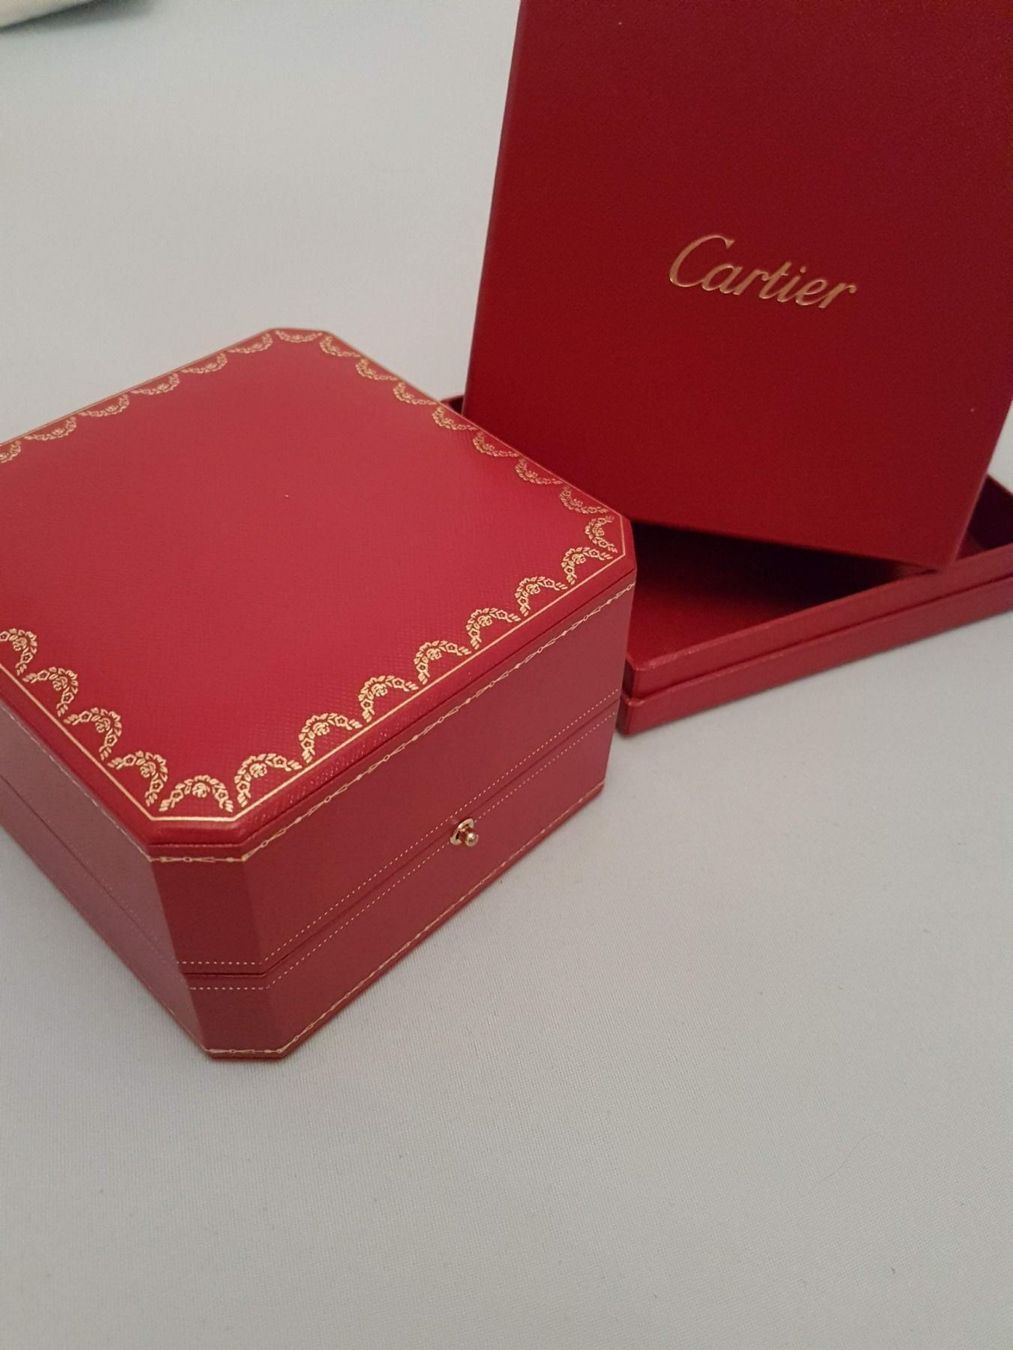 cartier box kaufen